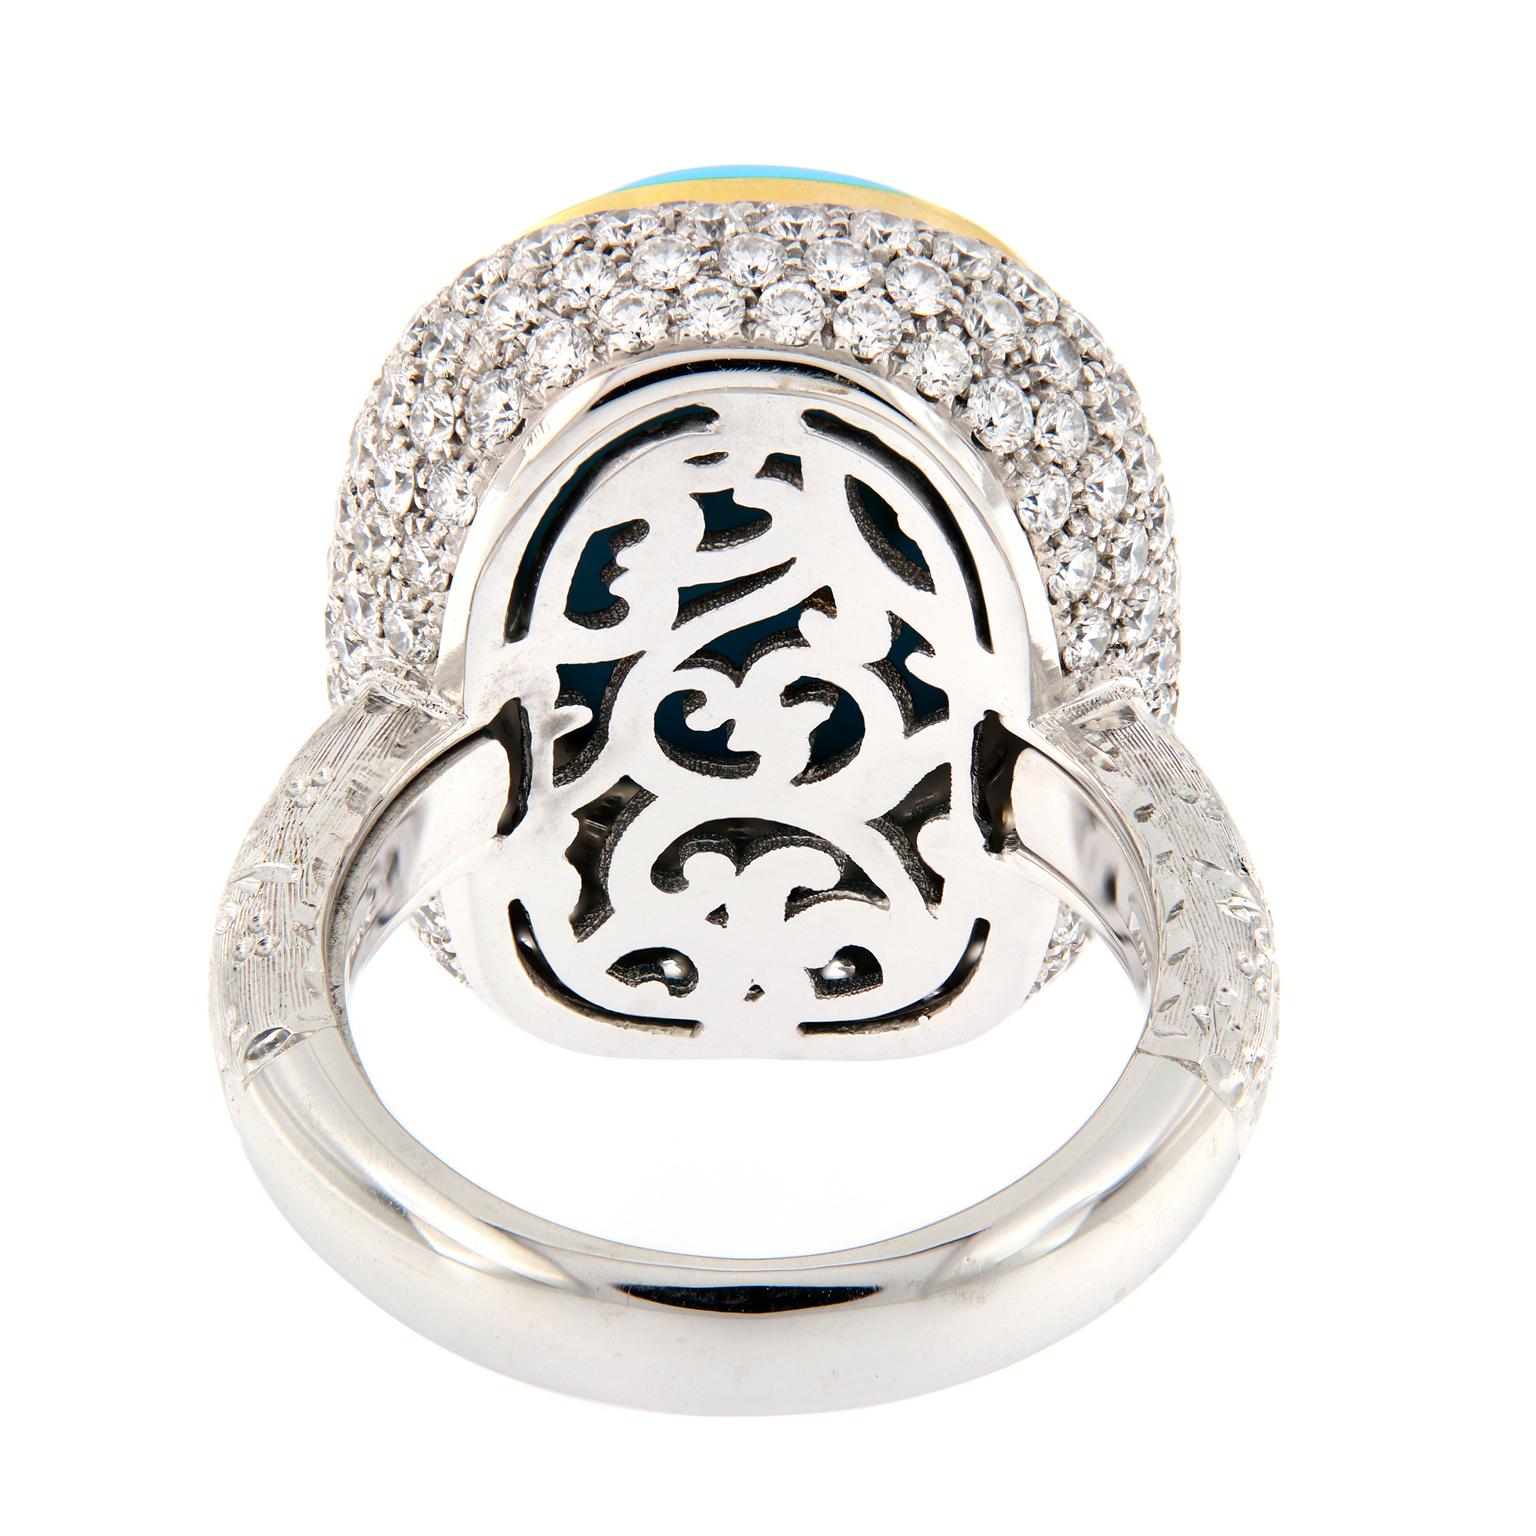 For Kyriaki: Teri Turquoise Diamond Gold Cocktail Ring 1